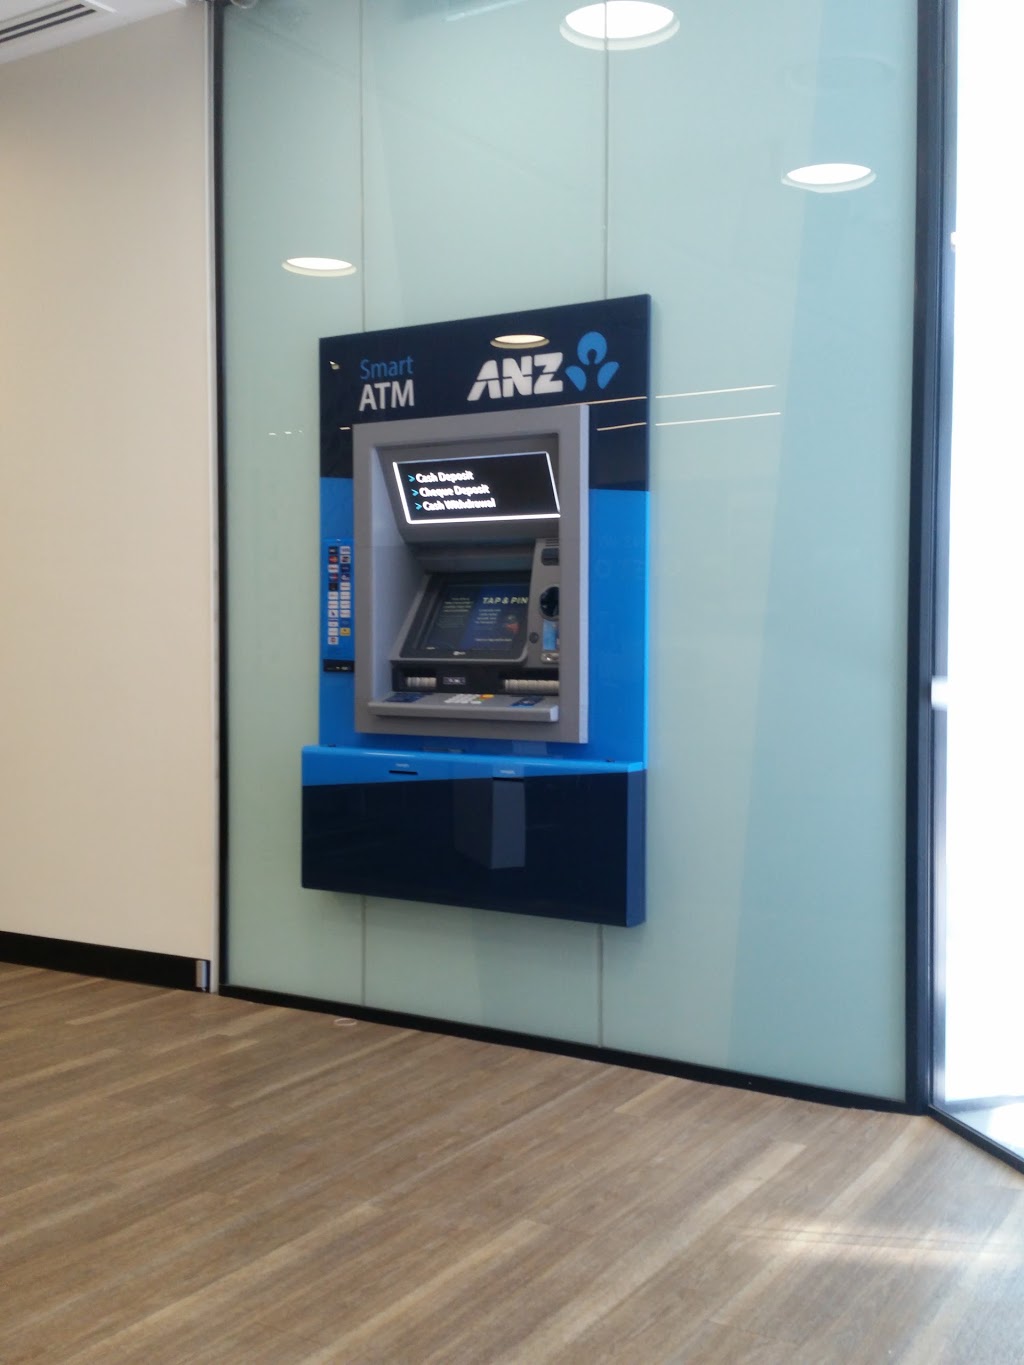 ANZ Branch | bank | 94 Robinson Rd E, Virginia QLD 4014, Australia | 131314 OR +61 131314